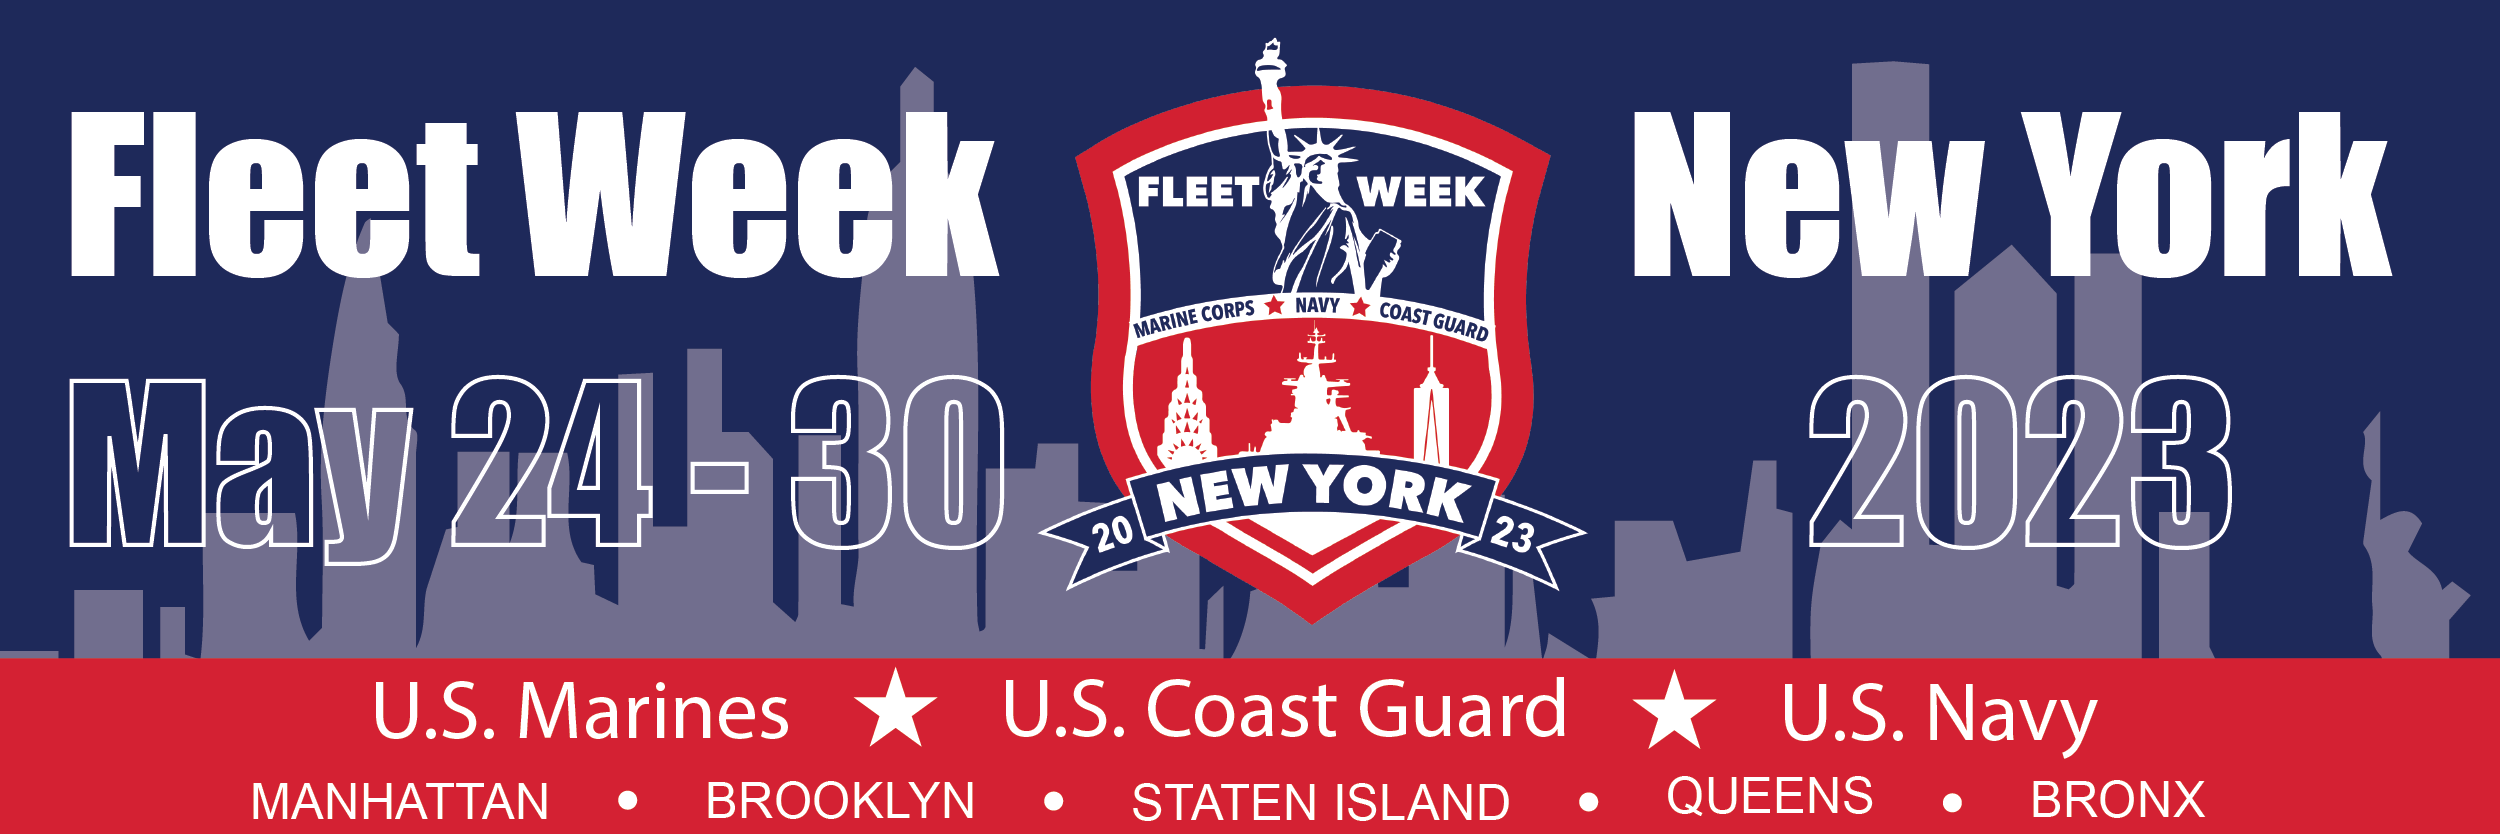 Fleet Week 2023 — New York Council Navy League